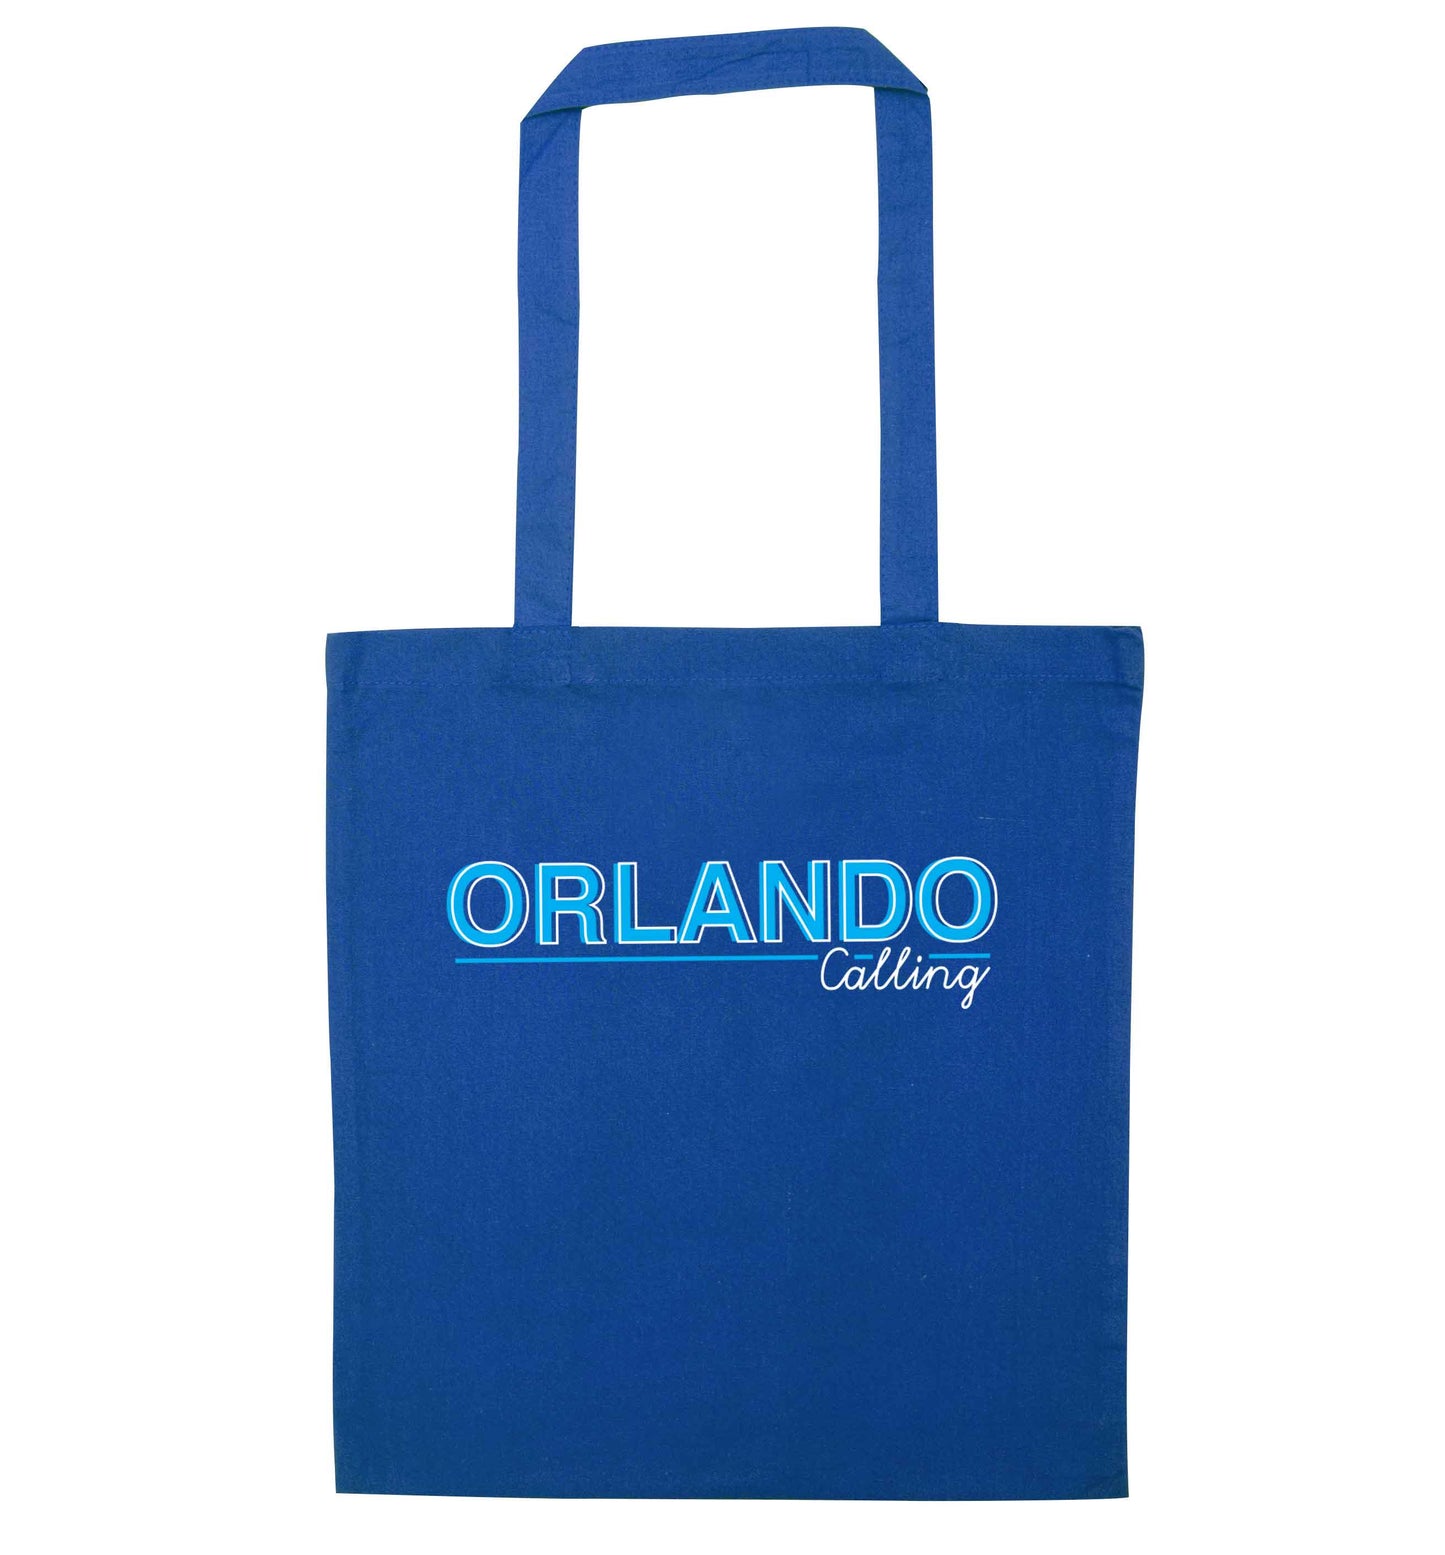 Orlando calling blue tote bag